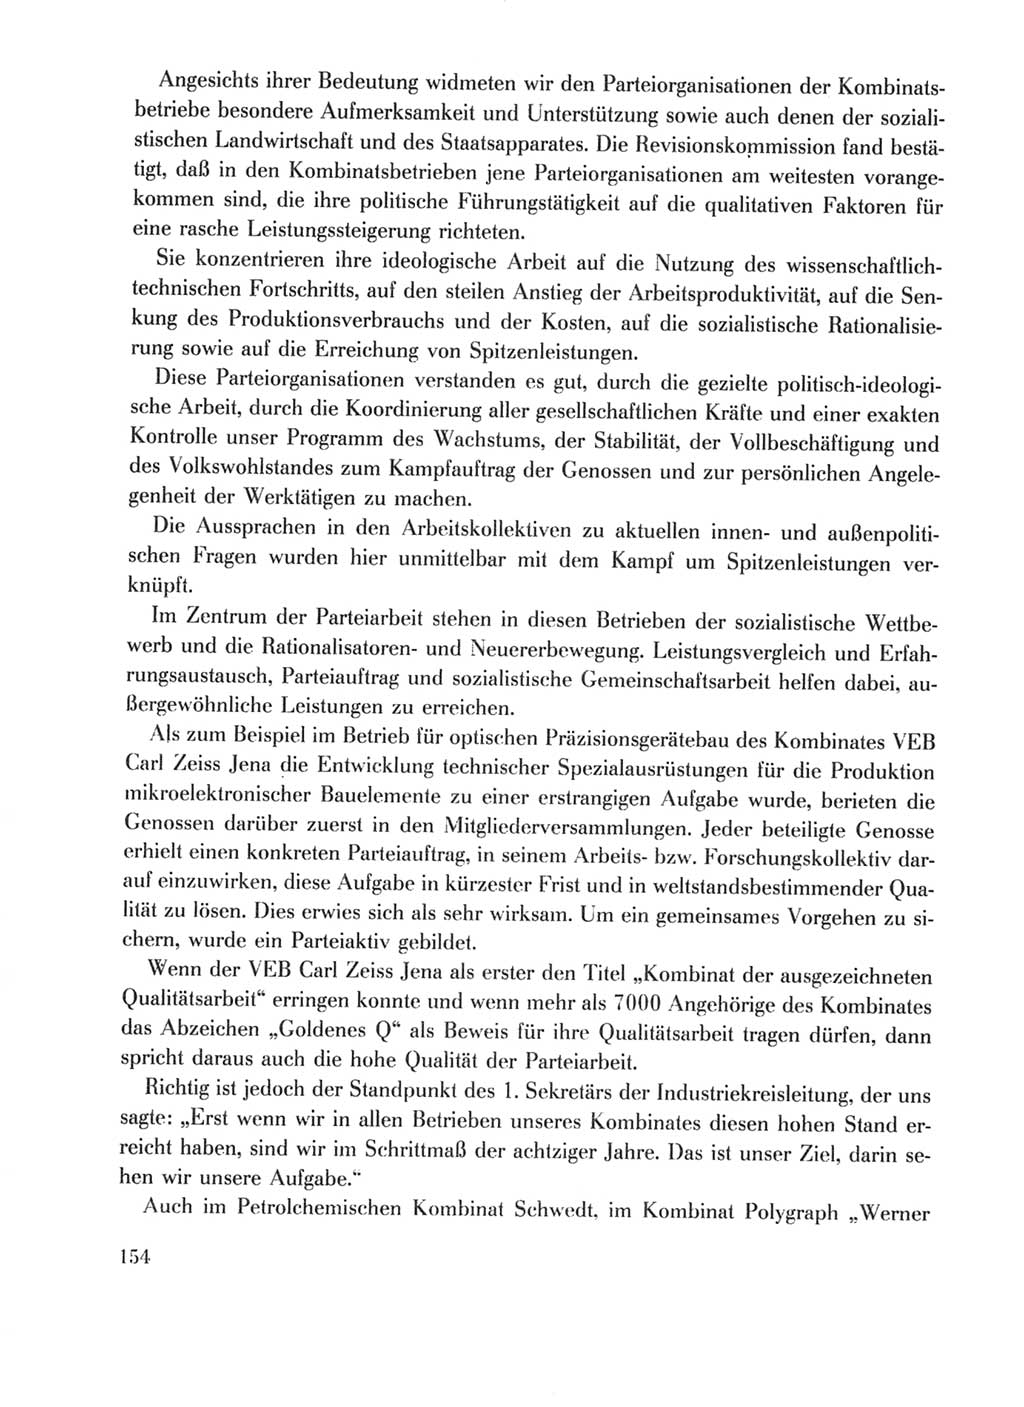 Protokoll der Verhandlungen des Ⅹ. Parteitages der Sozialistischen Einheitspartei Deutschlands (SED) [Deutsche Demokratische Republik (DDR)] 1981, Band 1, Seite 154 (Prot. Verh. Ⅹ. PT SED DDR 1981, Bd. 1, S. 154)